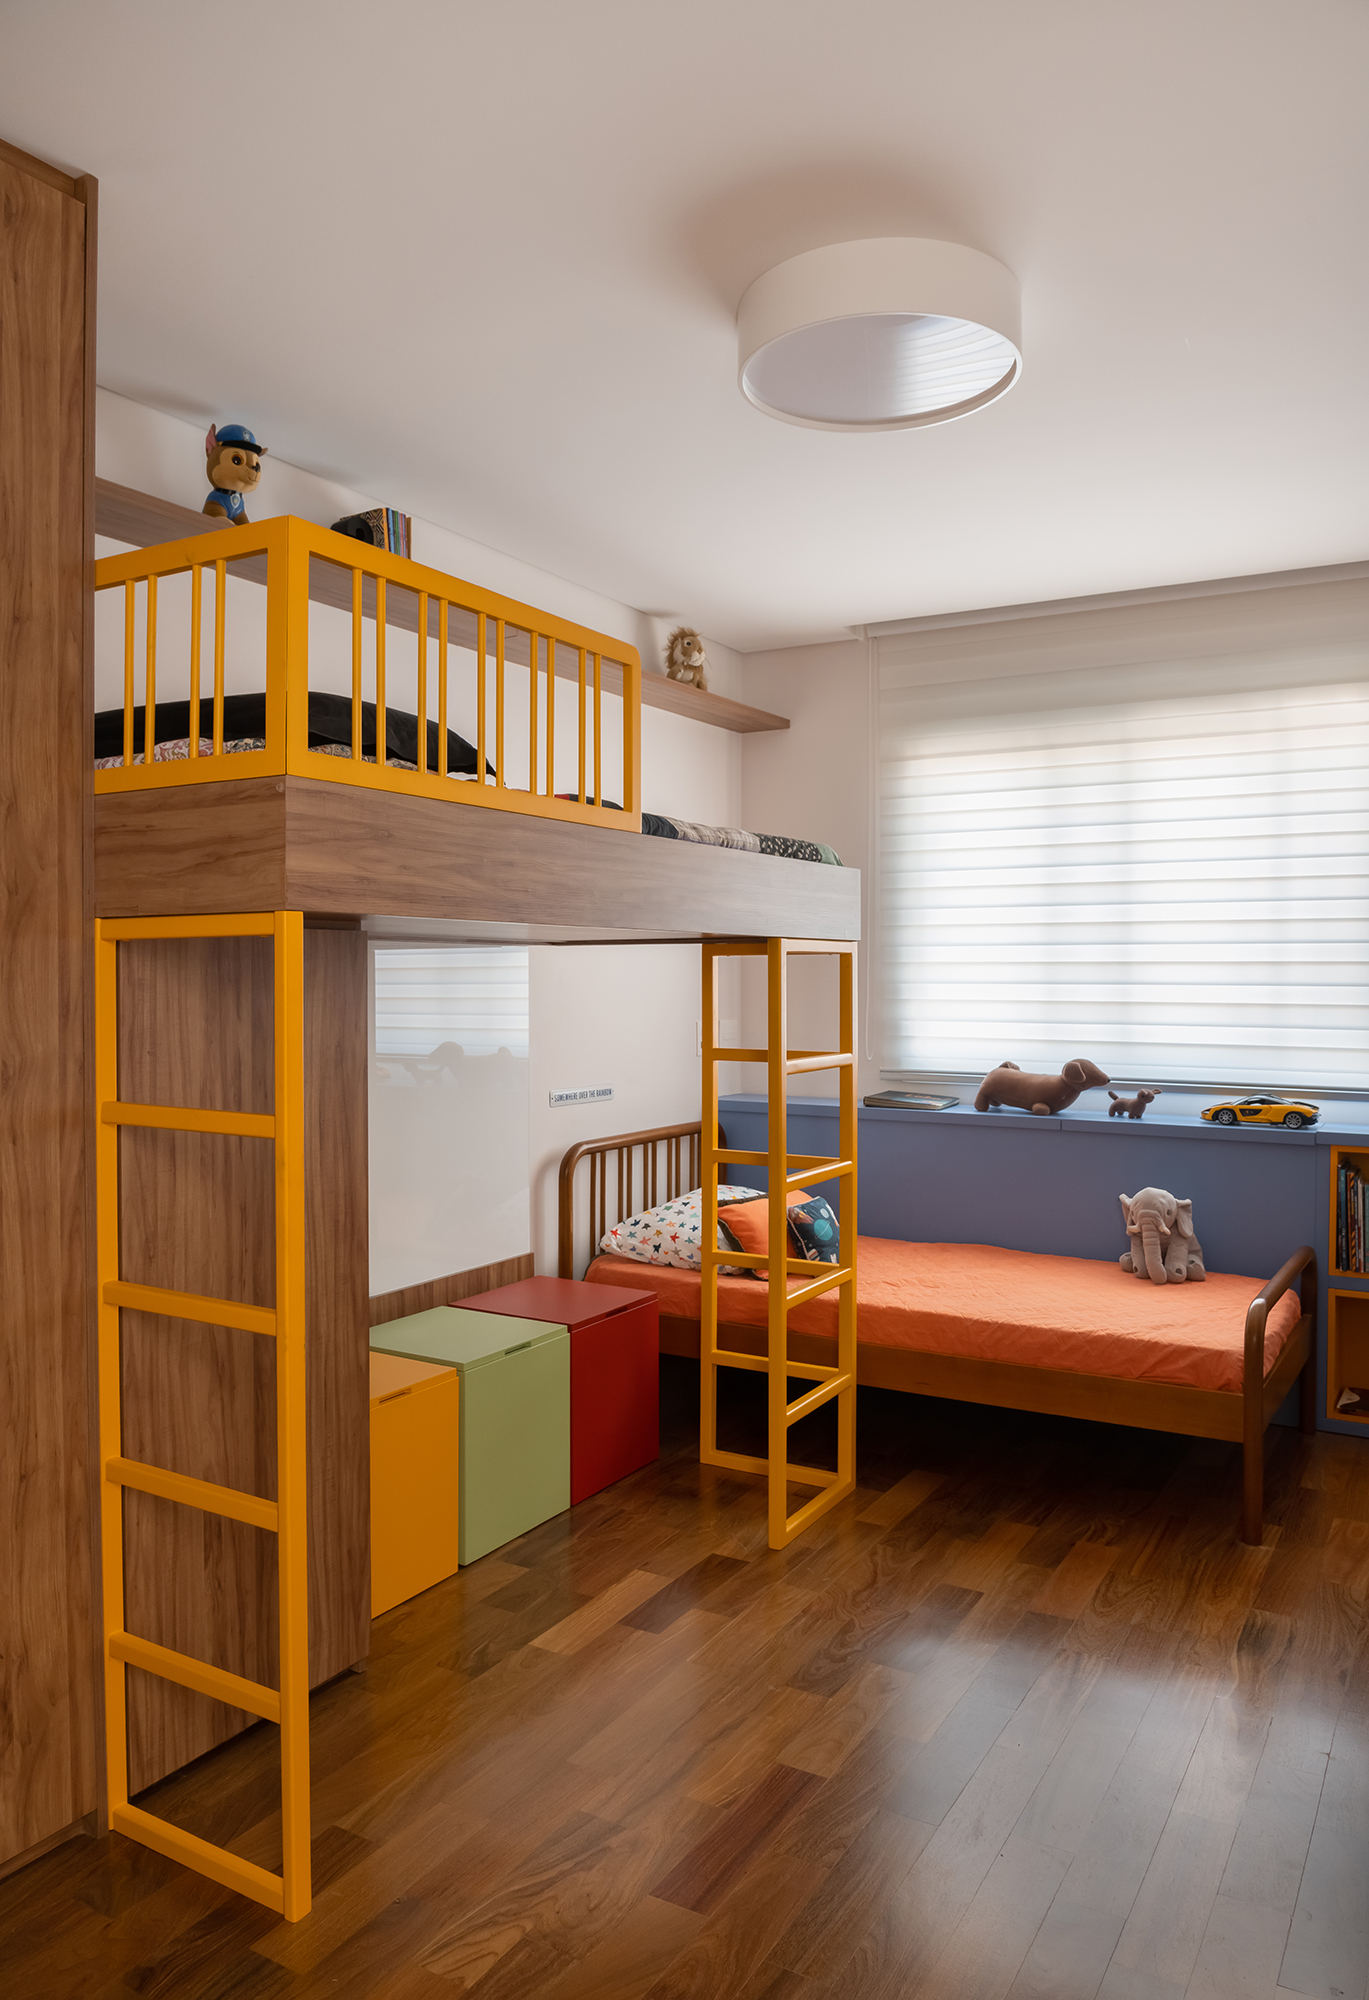 Apartamento de 188 m² ganha dois cooktops na cozinha e balanços na sala, Projeto Raízes Arquitetos. Na foto, quarto infantil com beliche e móveis coloridos.